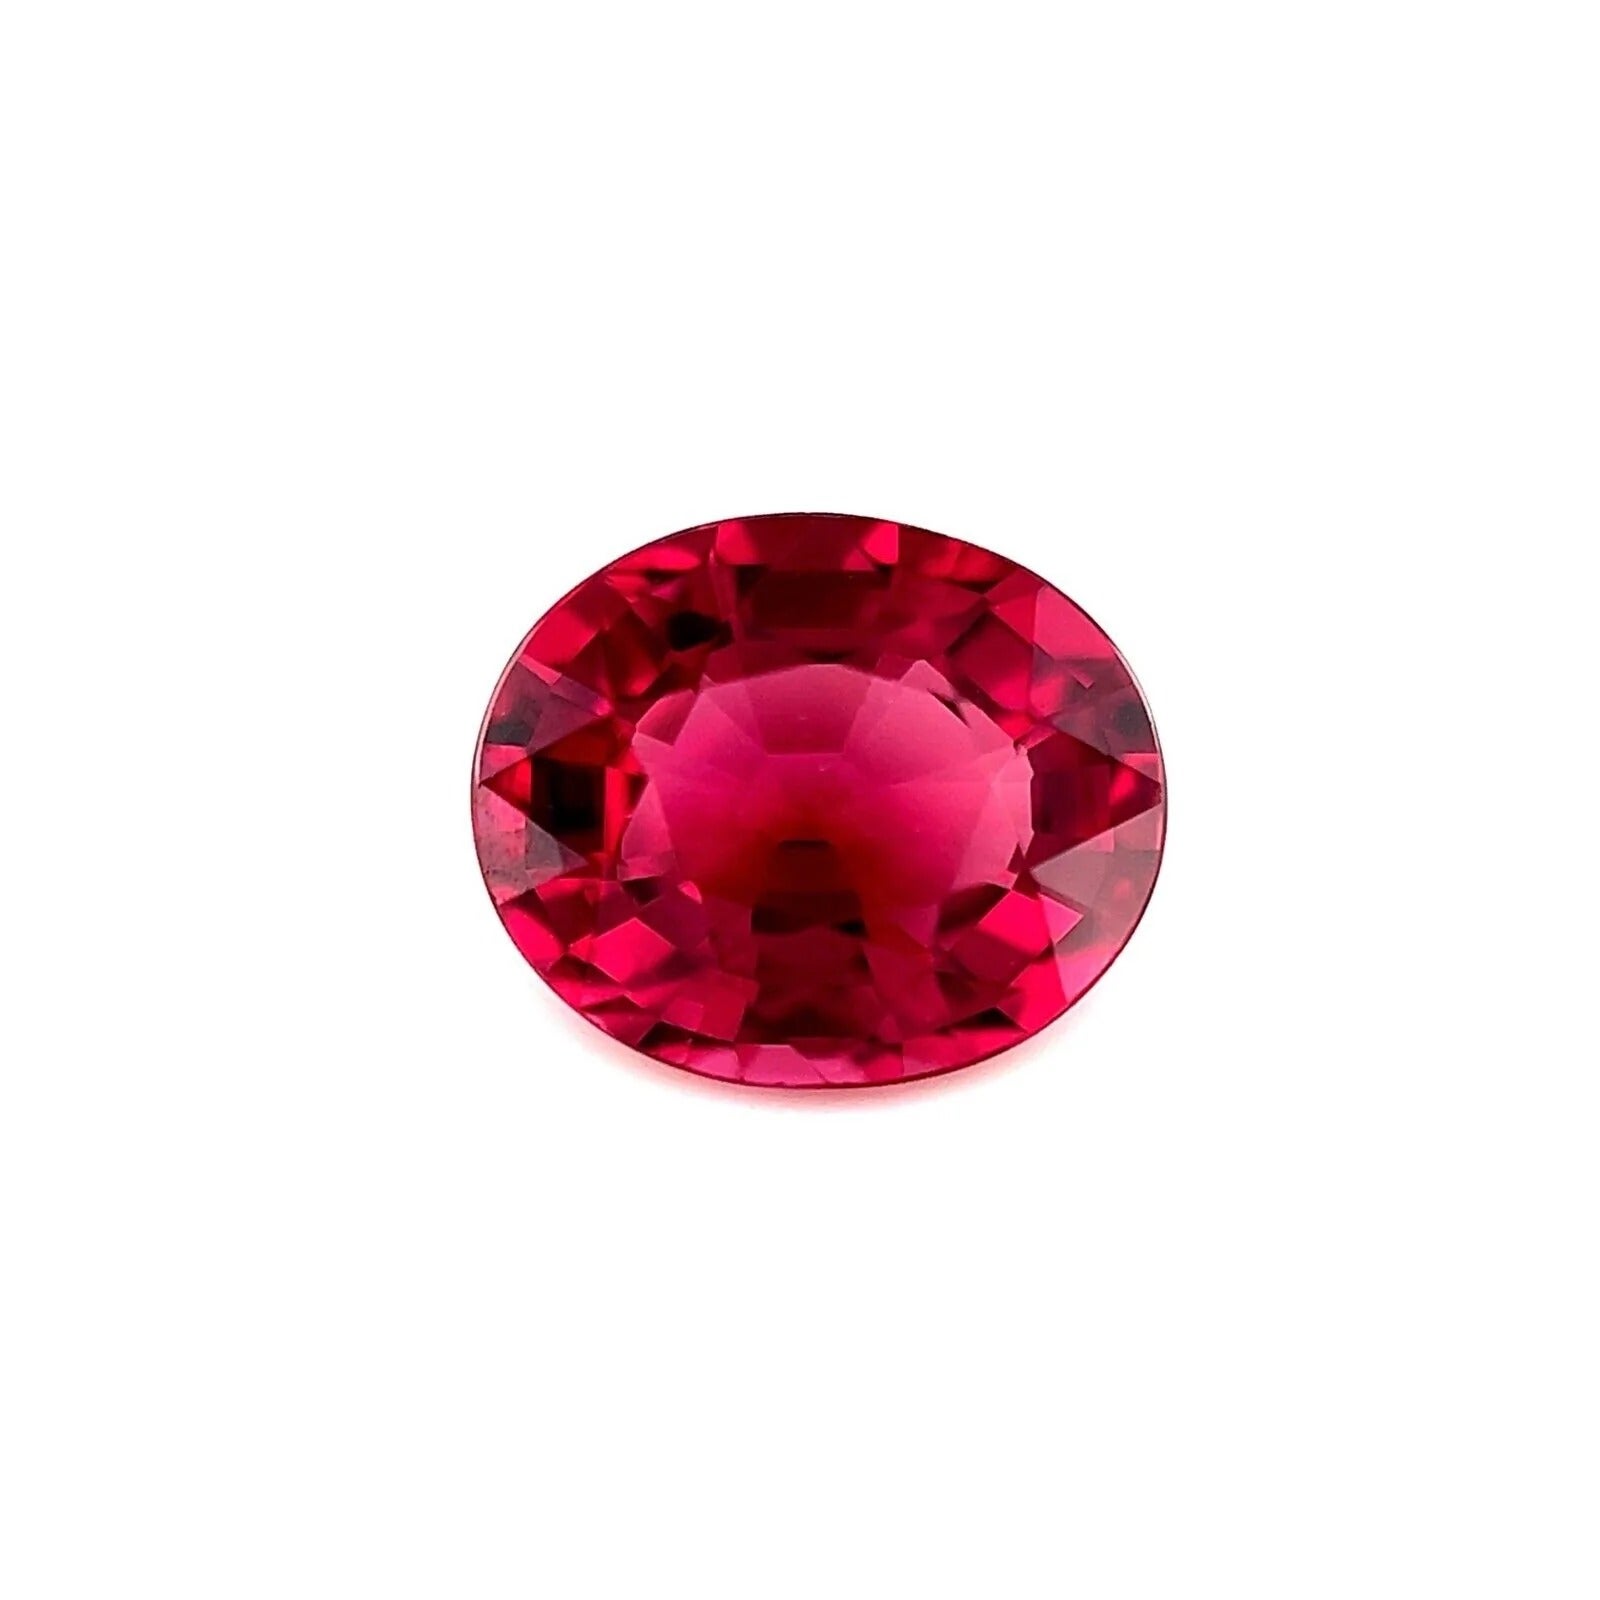 Grenat rhodolite rose vif et violet de 2,01 carats, taille ovale 8,2 x 6,6,6 mm, pierre précieuse non sertie IF